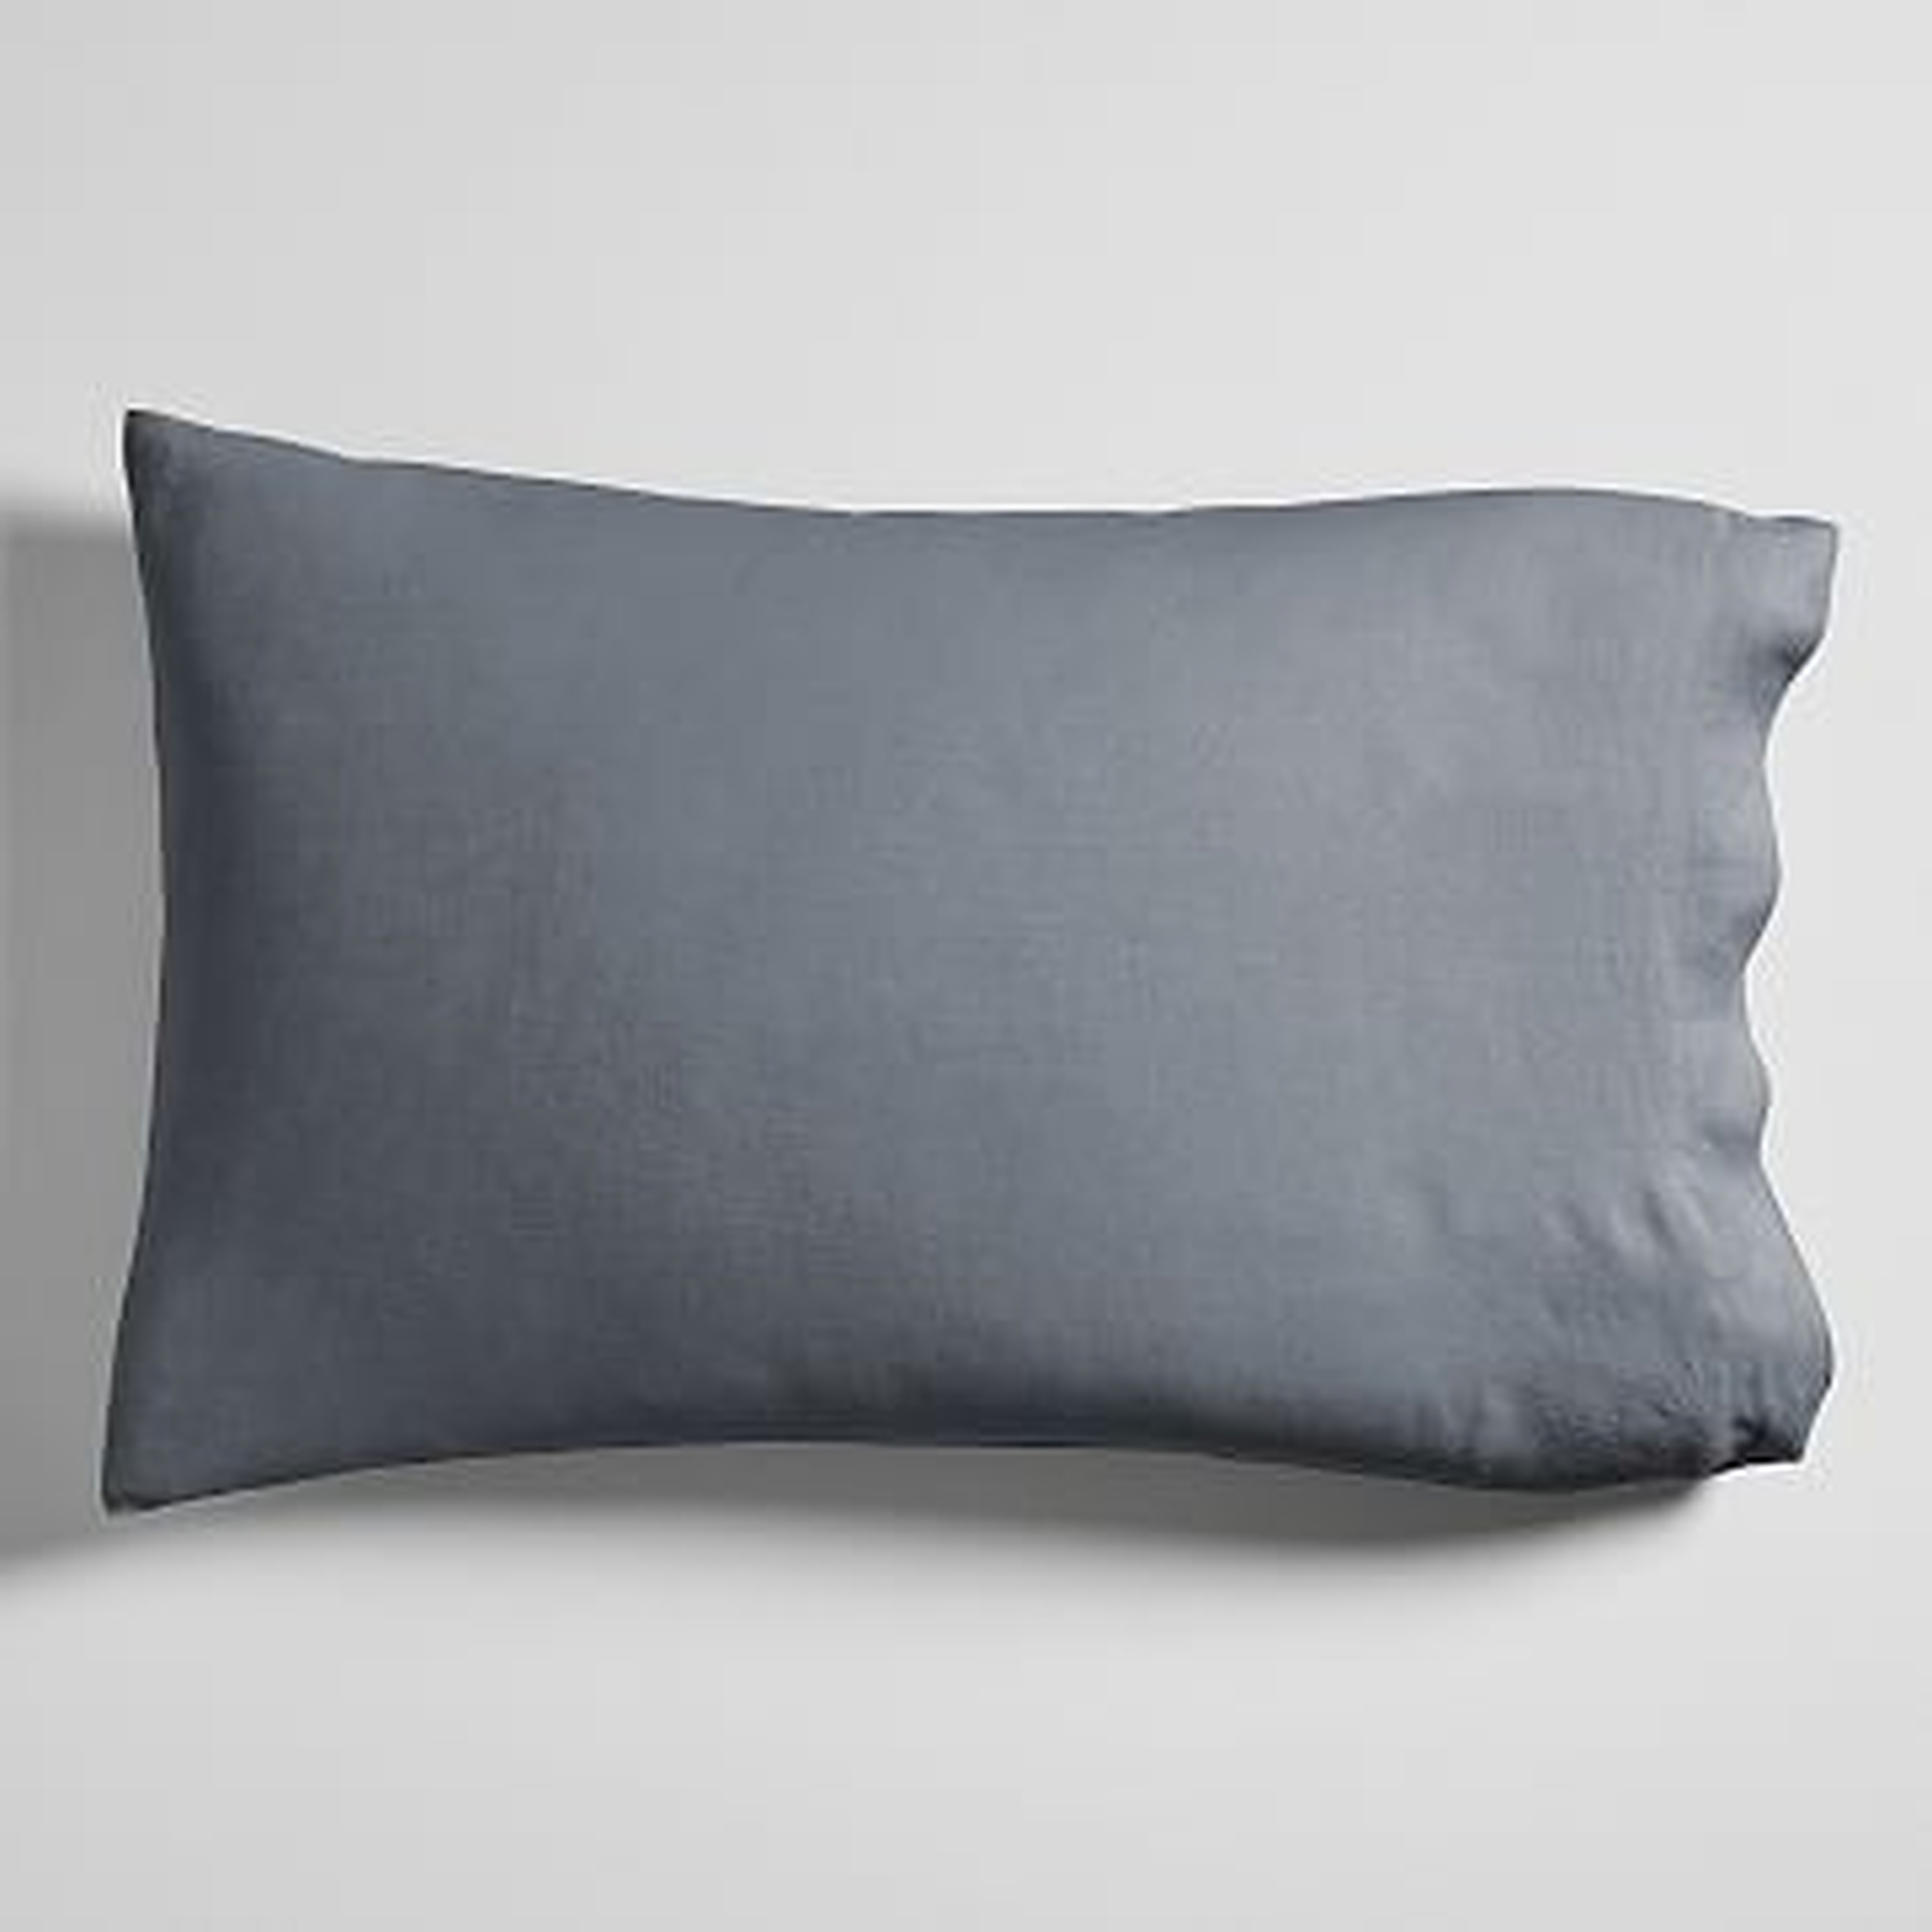 European Flax Linen Sheet Set, Standard Pillowcase Set, Graphite - West Elm